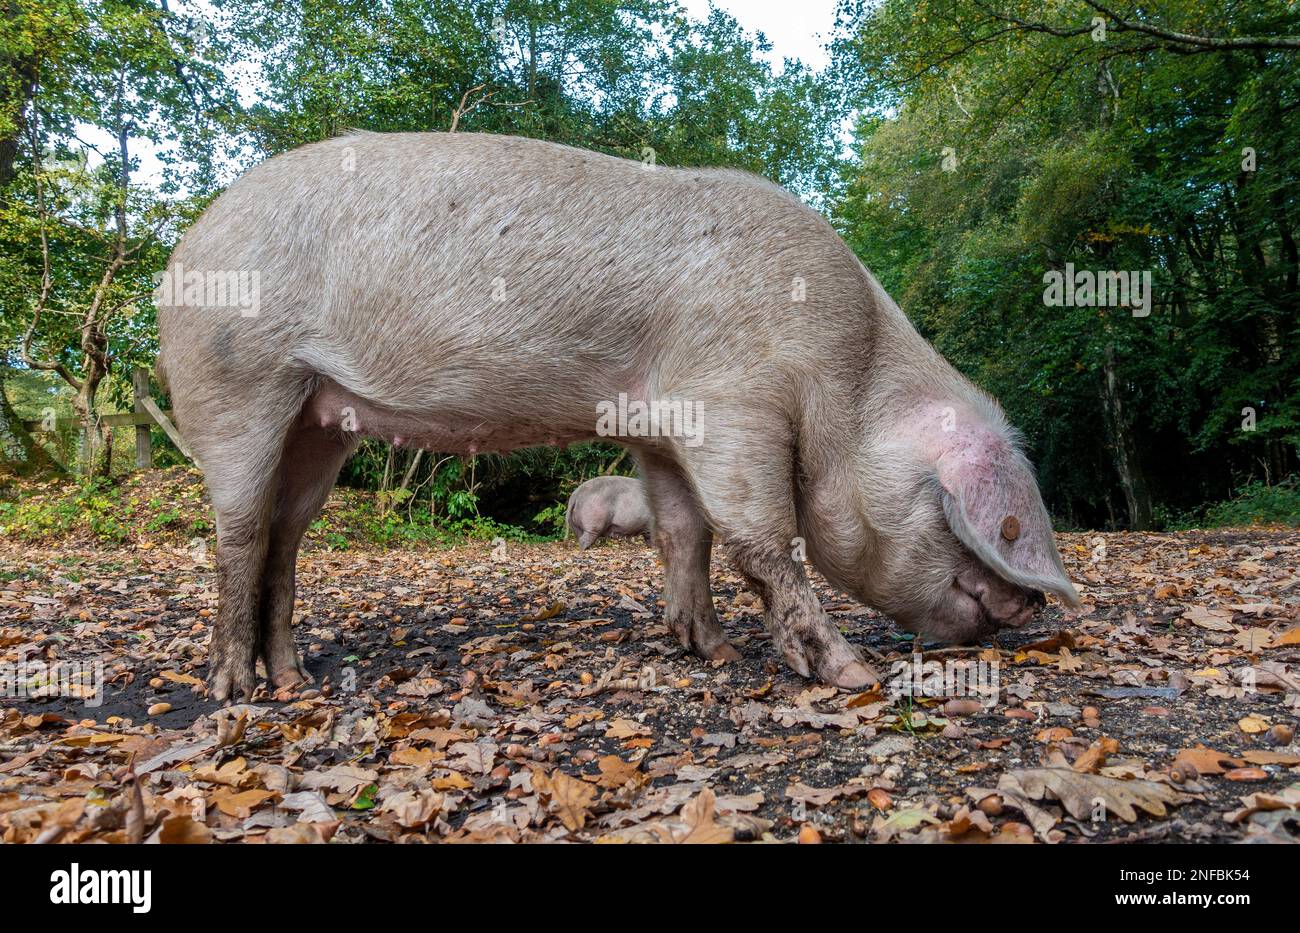 Pannage oder gemeiner Mast – im September wandern frei lebende Hausschweine durch den New Forest, wenn Eicheln und andere Nüsse von den Bäumen fallen. Stockfoto